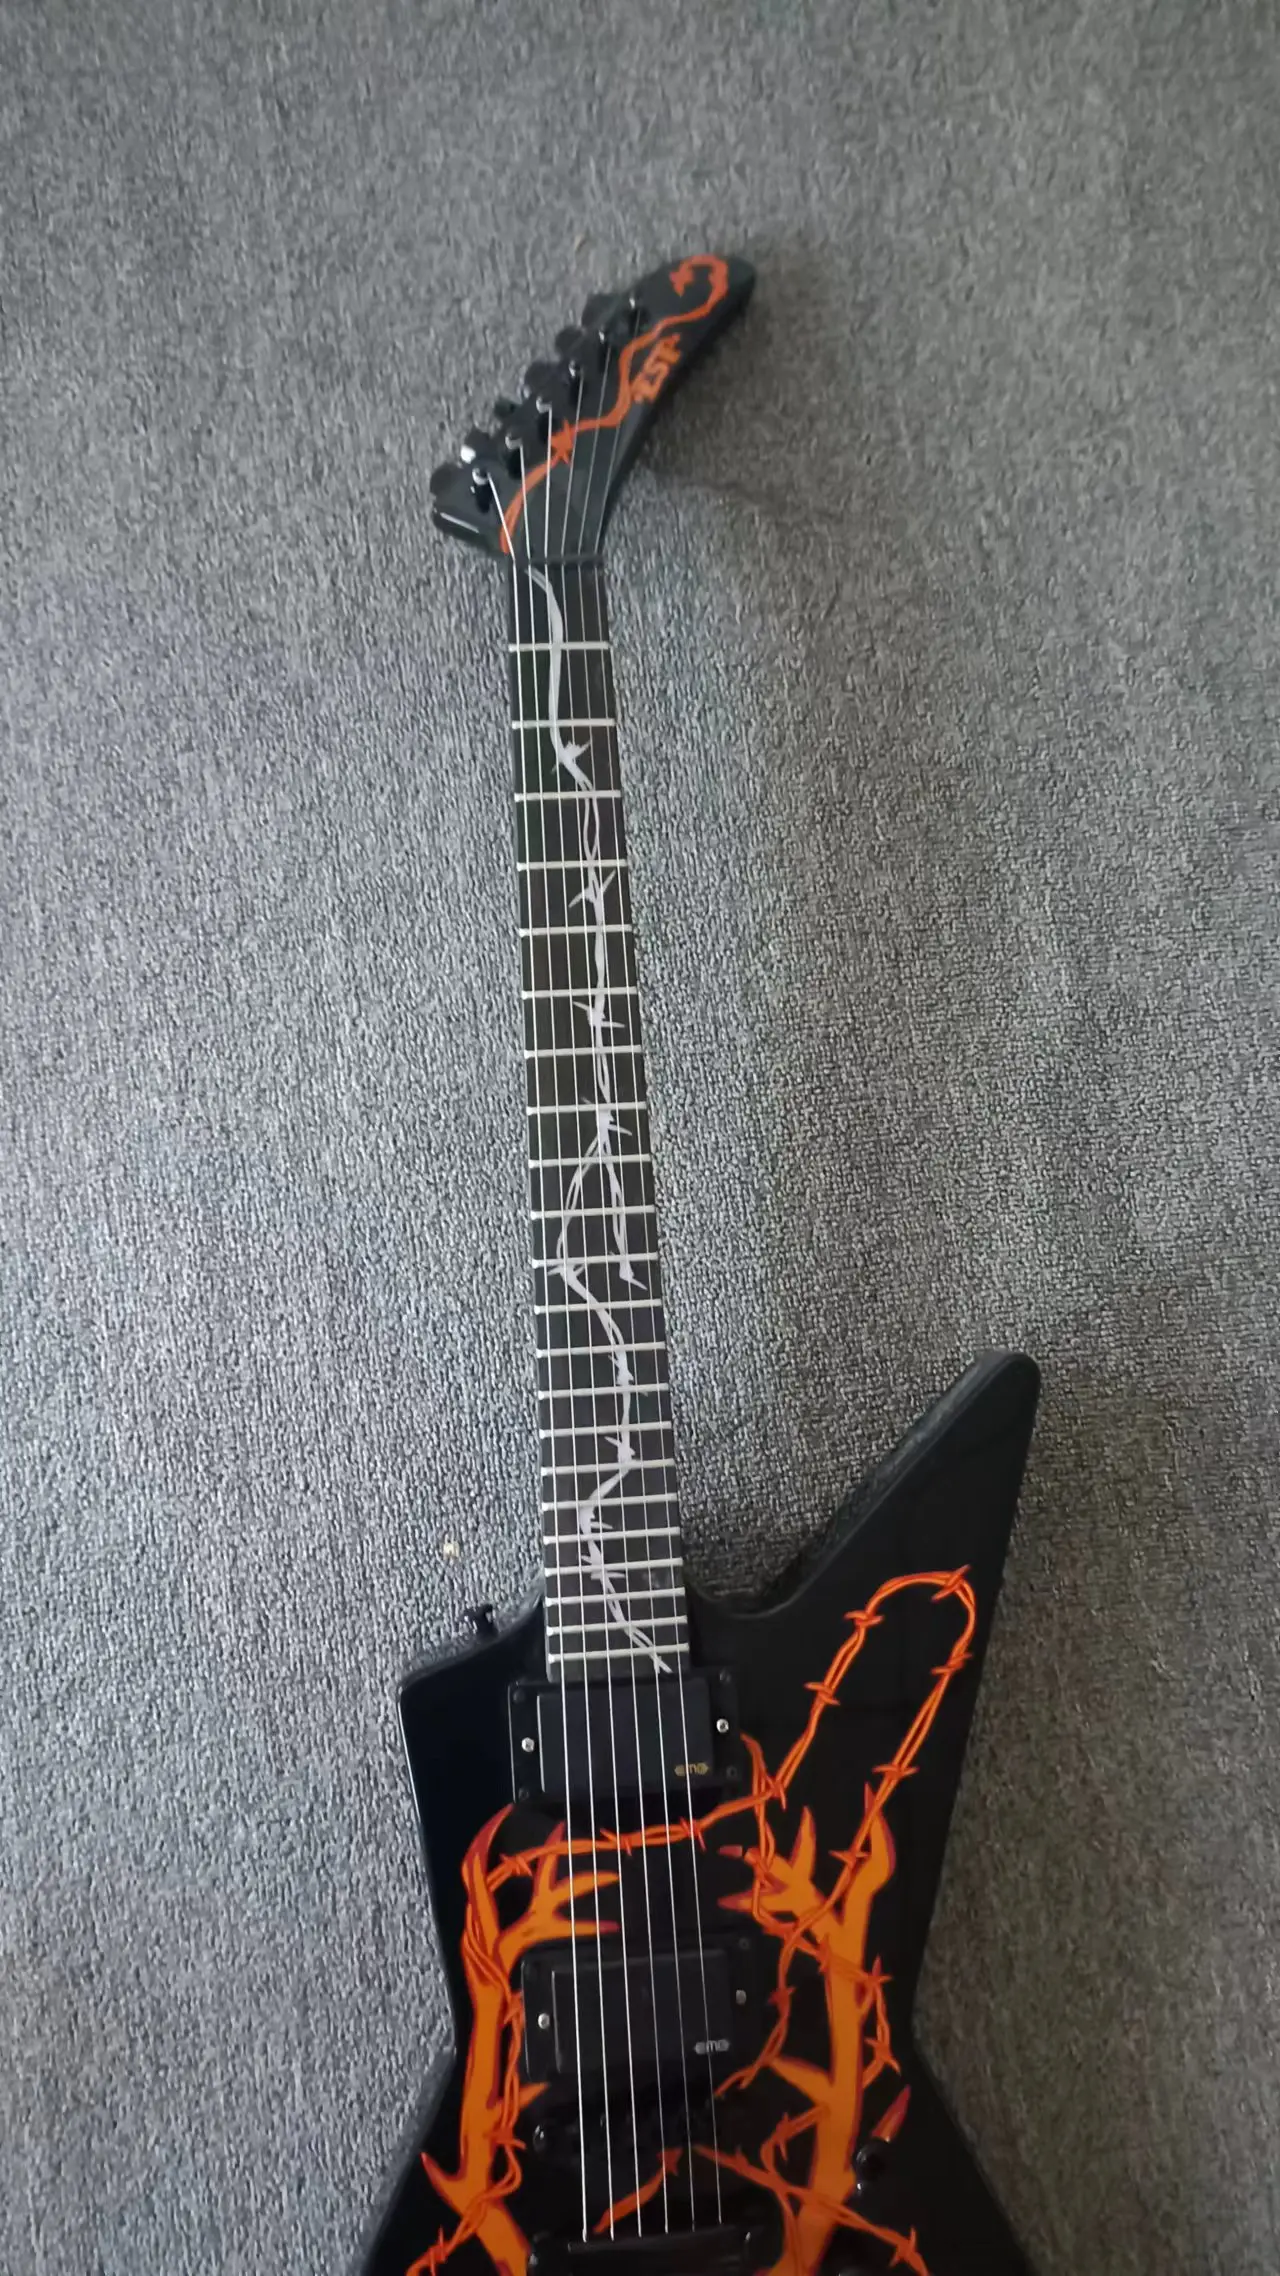 

Специальная интегрированная электрическая гитара в форме гуся, черный корпус с узором, LP bridge, EMG пикап, черные части, настоящий завод pictu